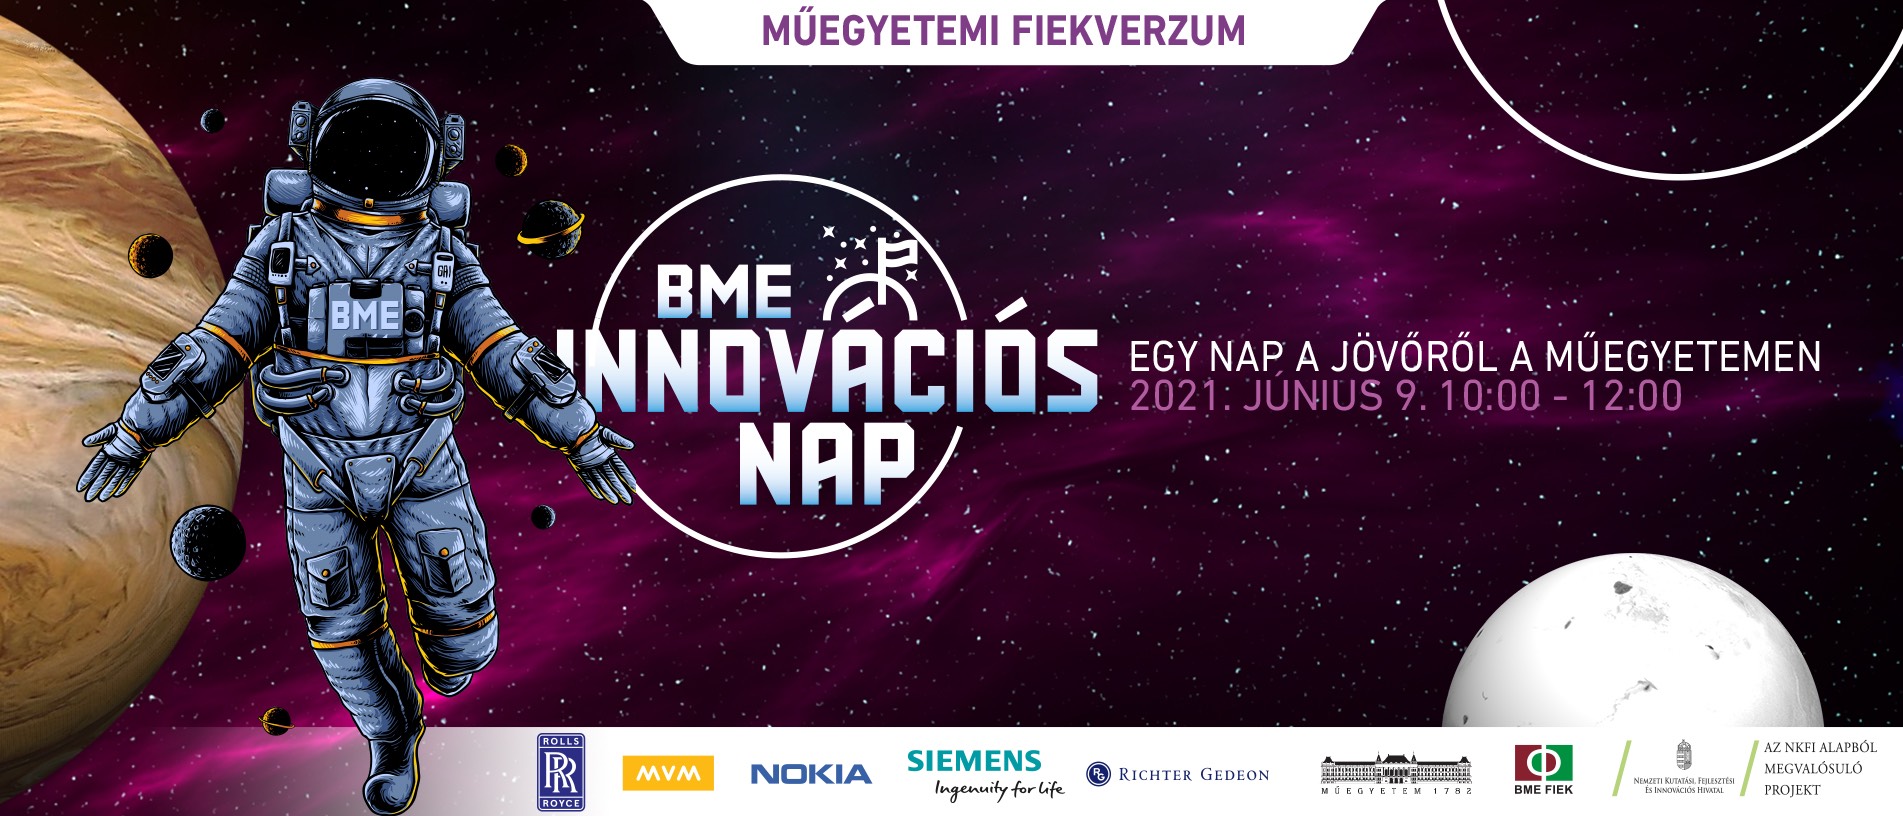 Világhírű 6G és Tactile Internet szakértő a BME Innovációs Napján